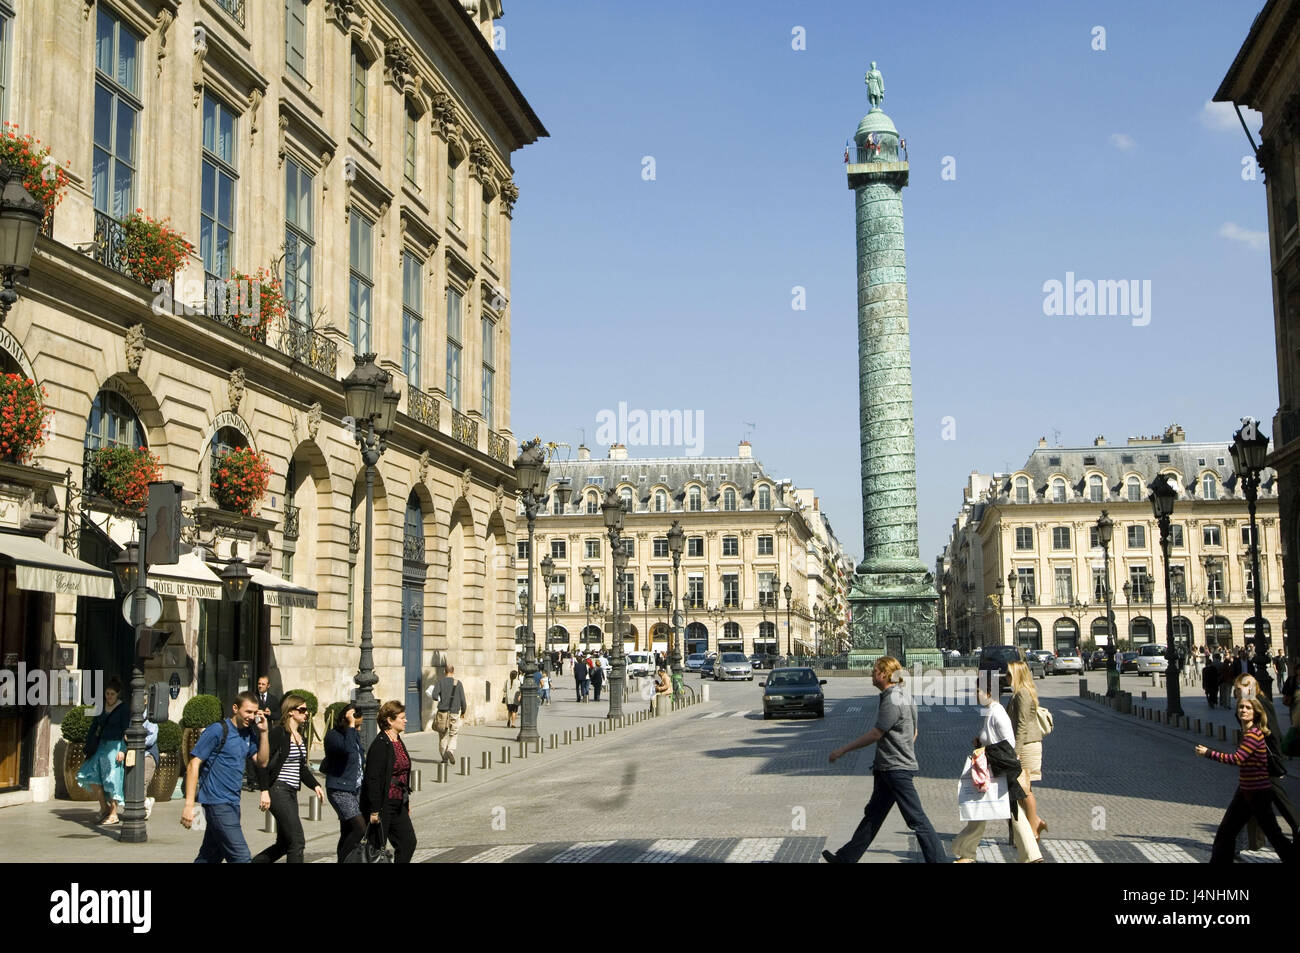 France, Paris, Place Vendome, Colonne de la grandee army, passer-by, Stock Photo